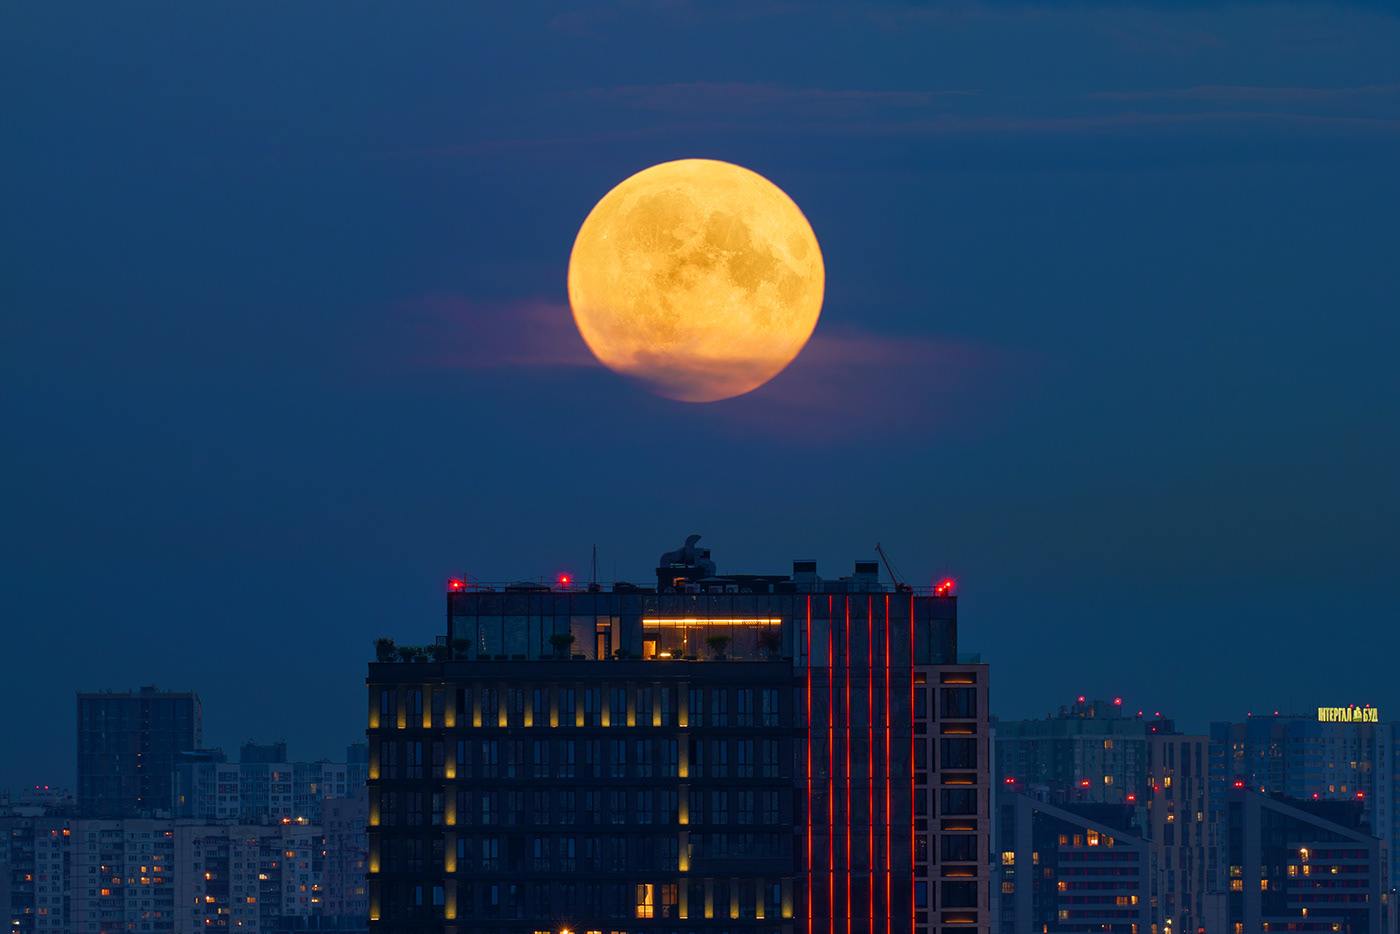 800mm Landscape landscape photography moon SKY skyline sunset Telephoto Urban